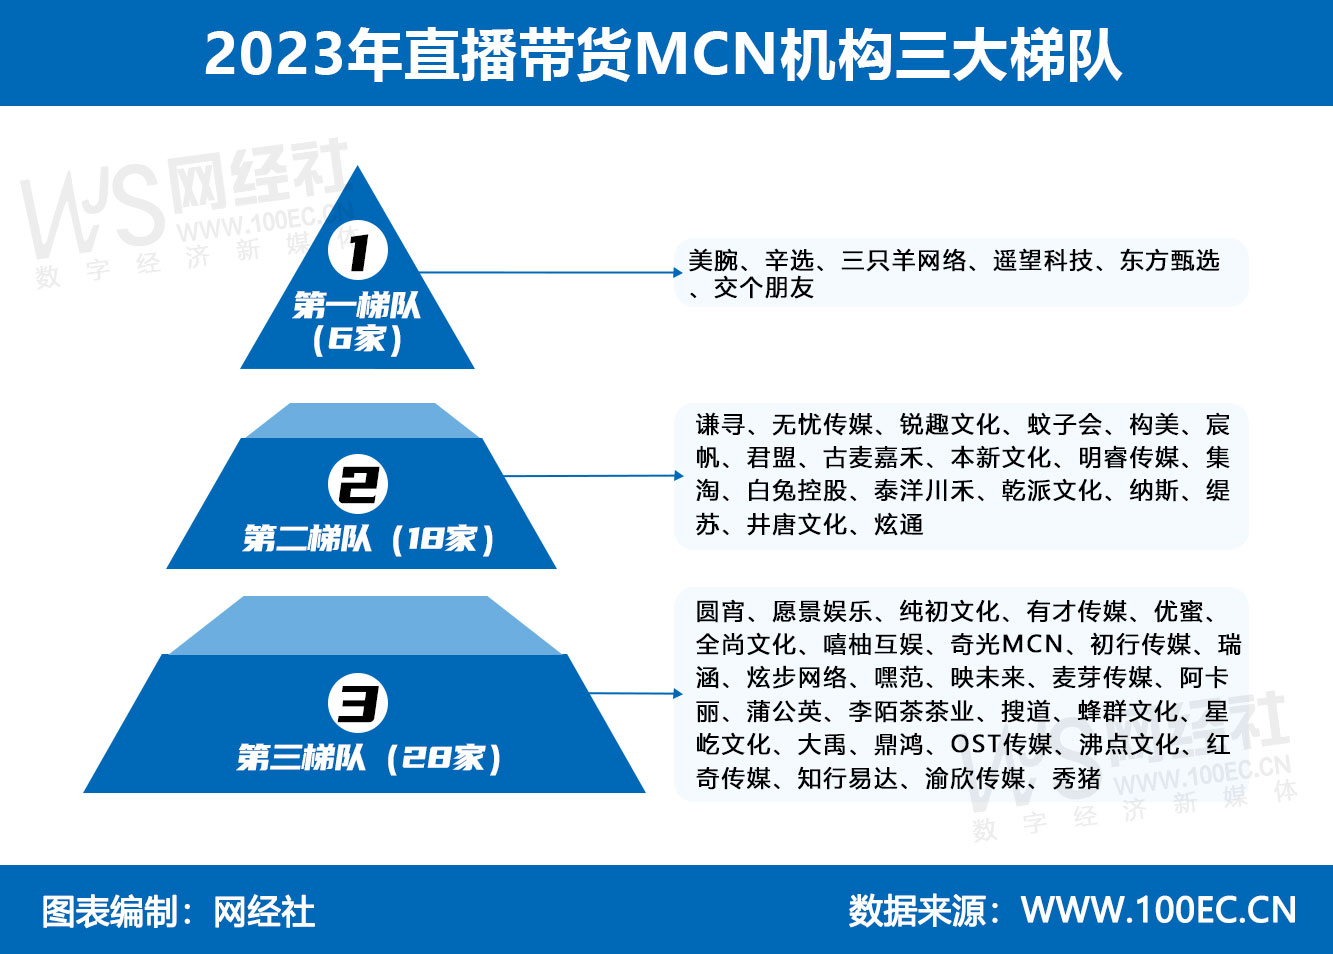 2023年直播带货MCN机构三大梯队(2).jpg